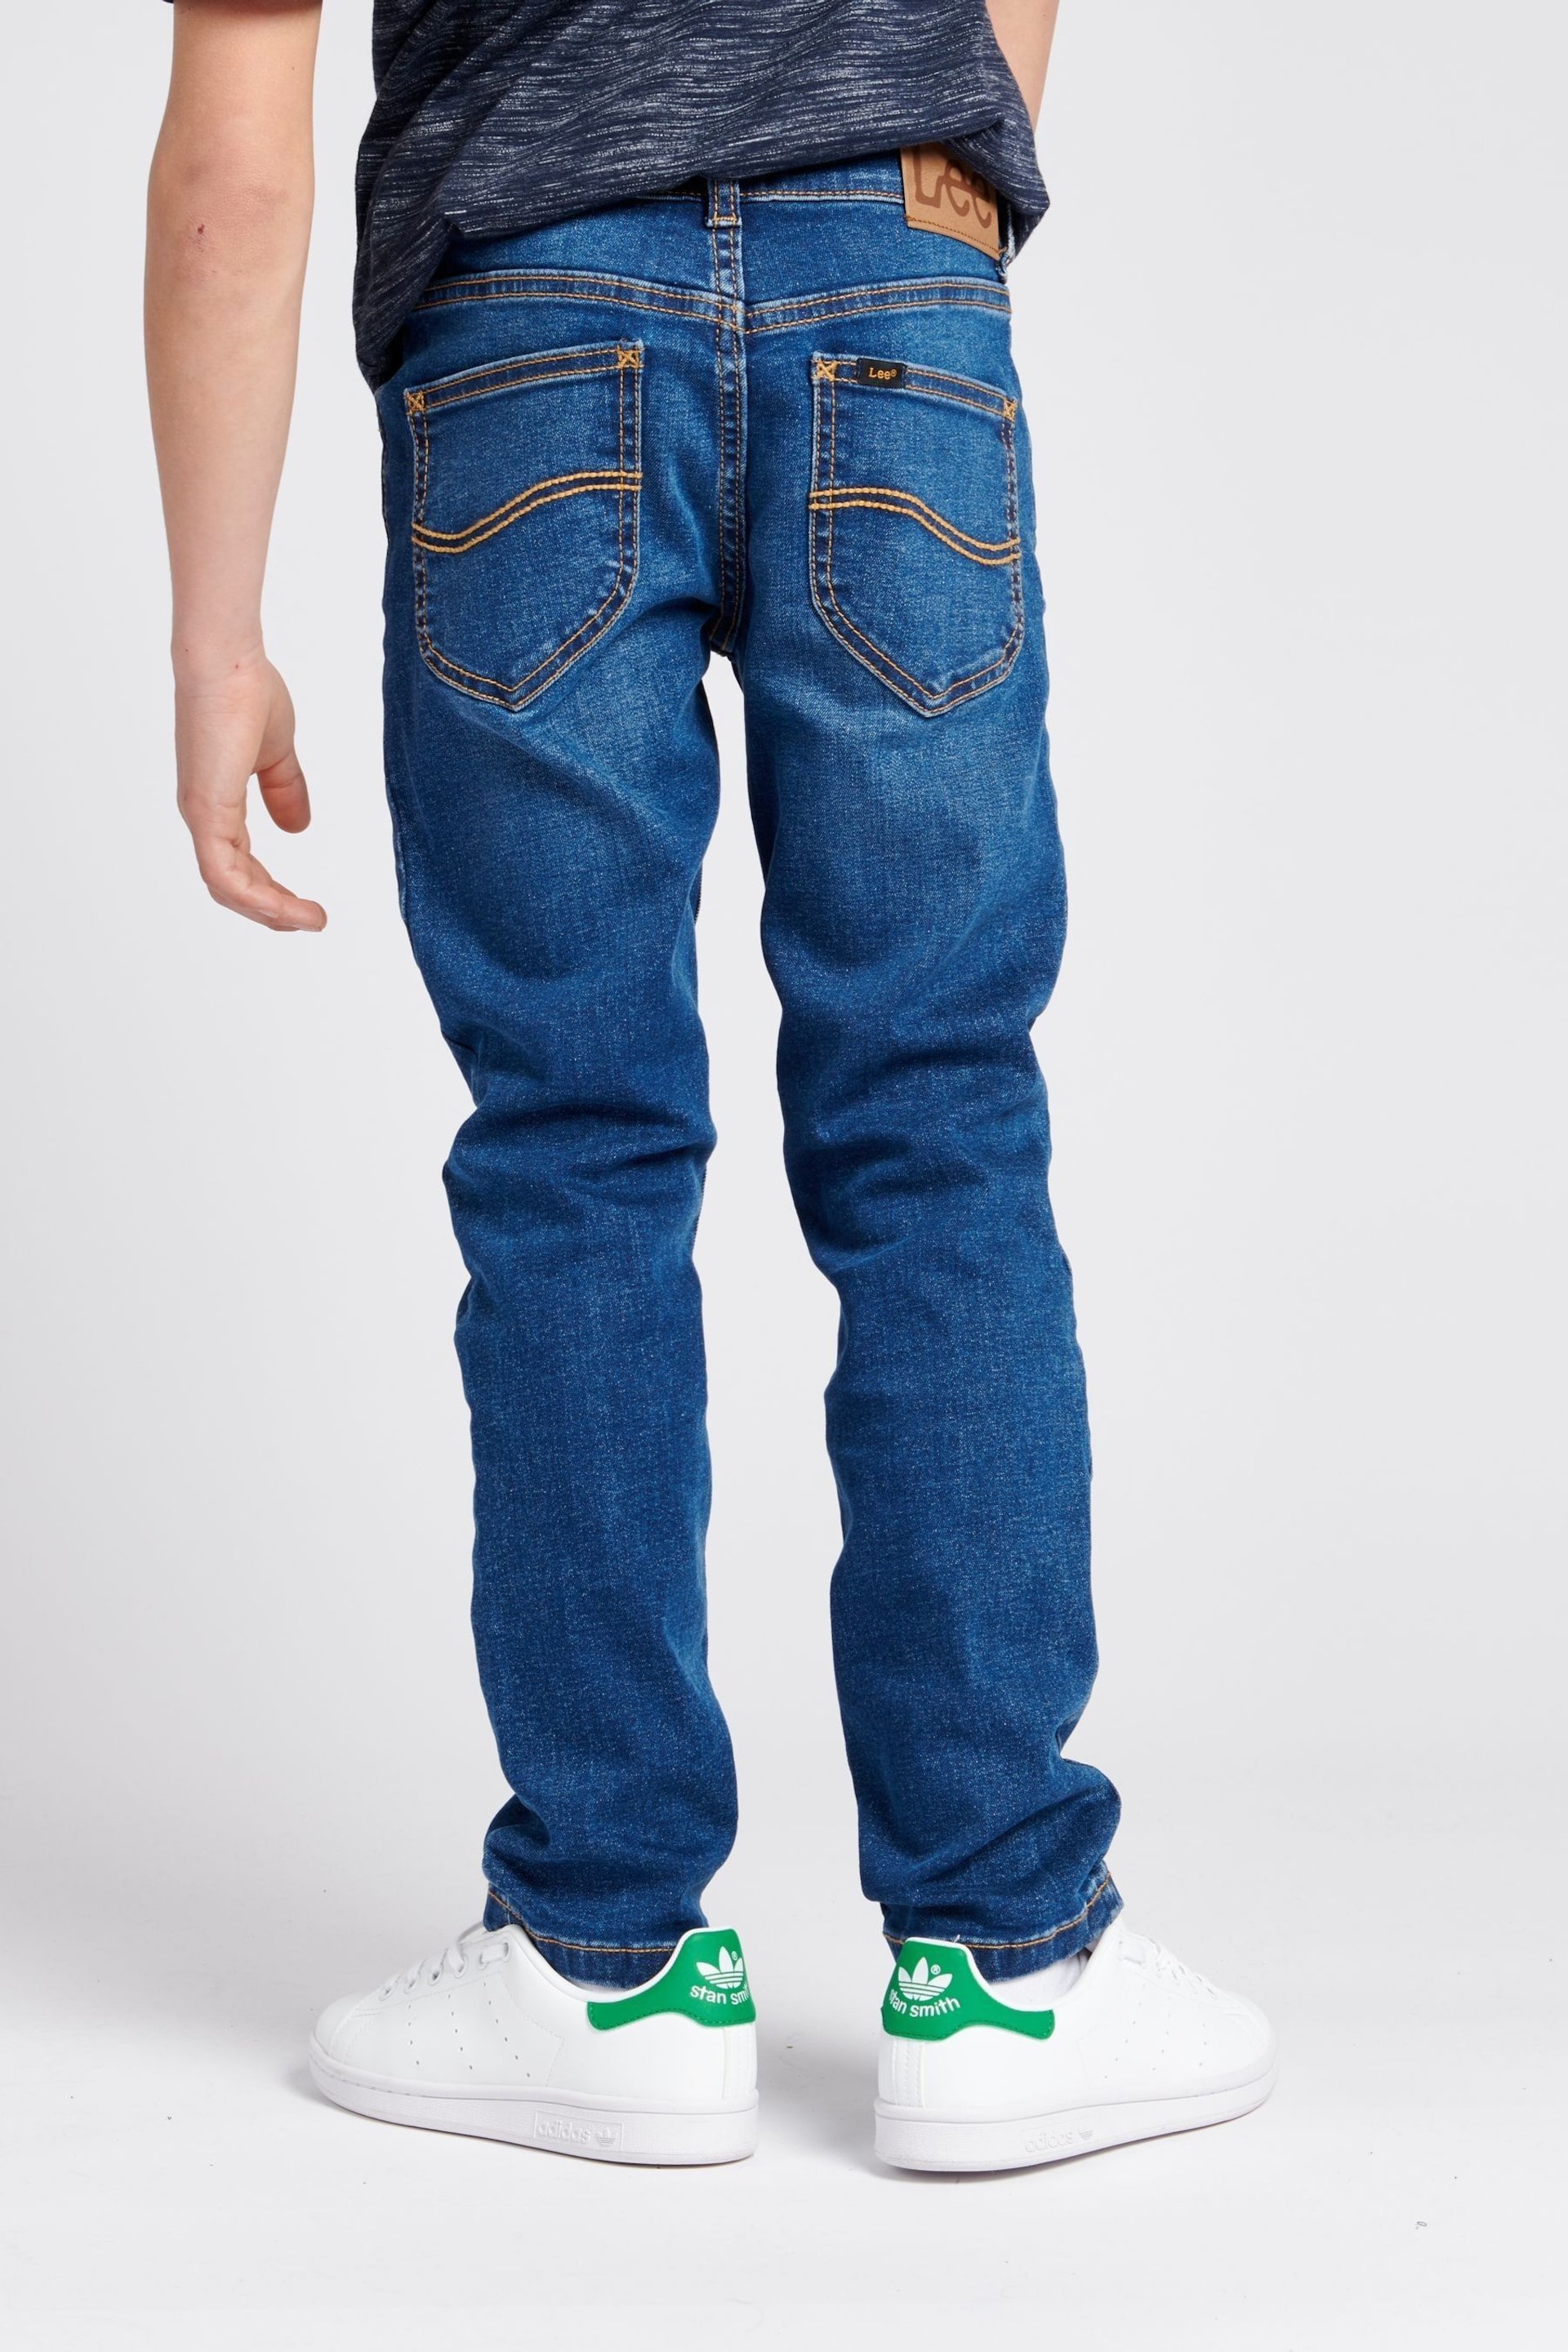 Lee Boys Luke Slim Fit Jeans - Image 2 of 9